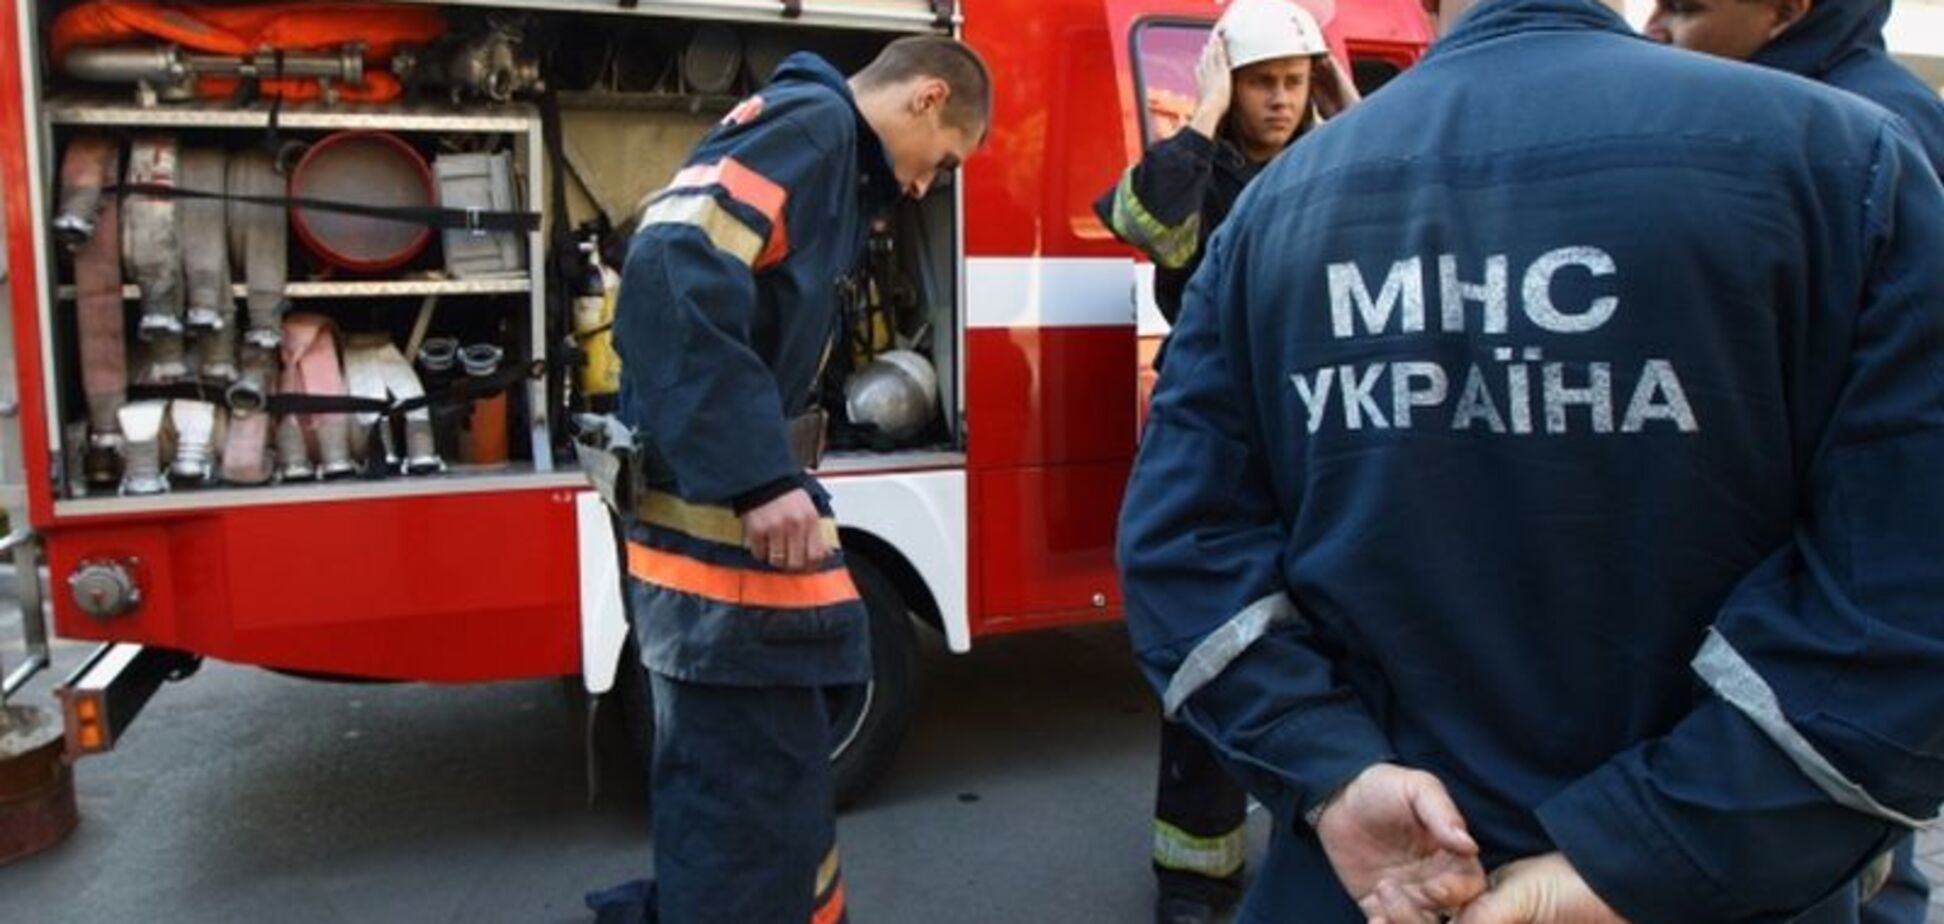 У центрі Києва спалахнула потужна пожежа: фото та відео з місця НП